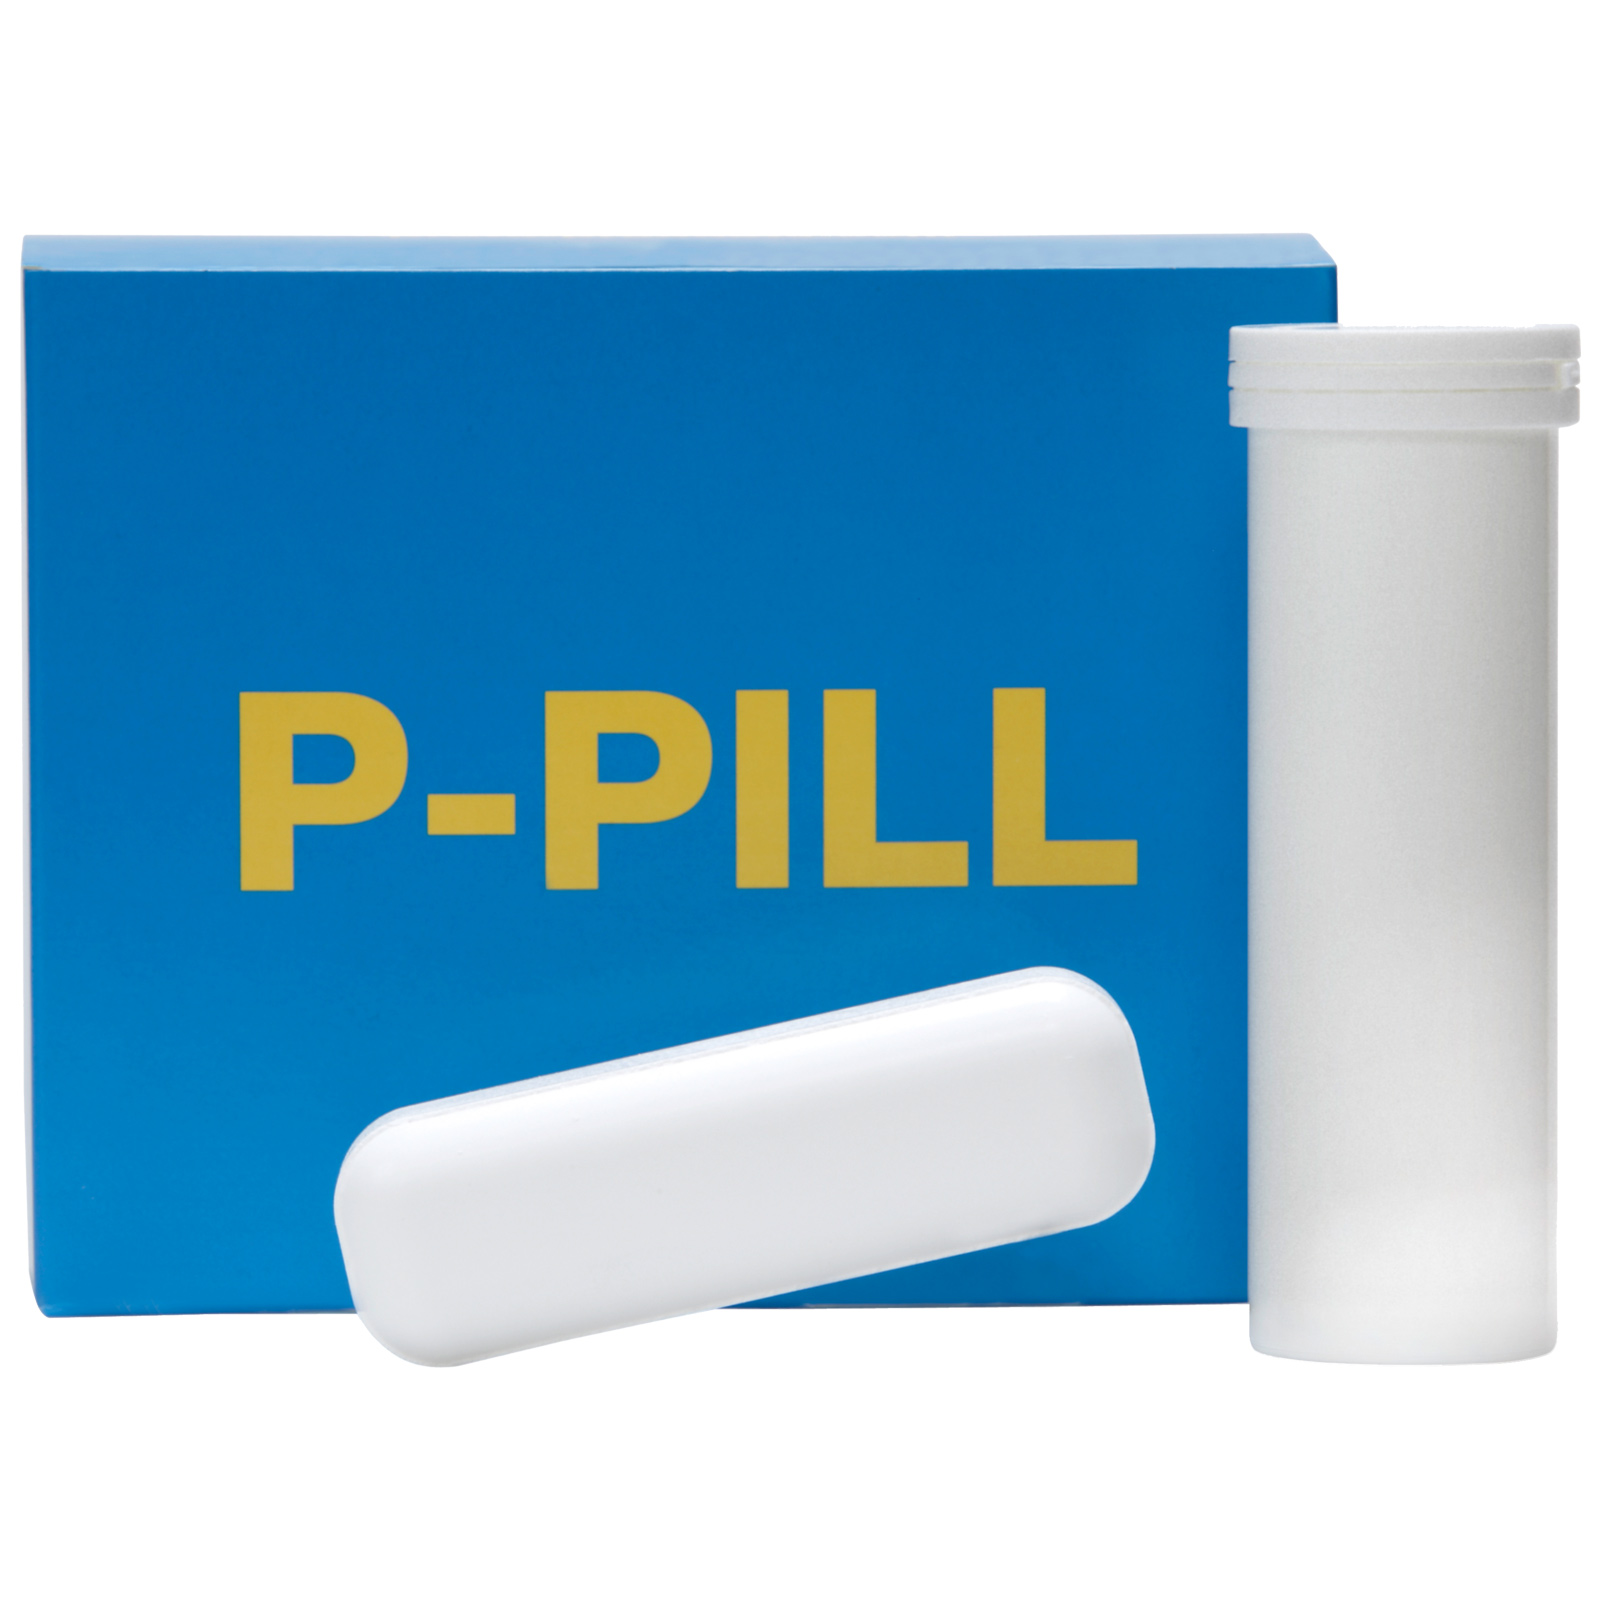 P-PILL împotriva deficitului de fosfor 4 x 120 g